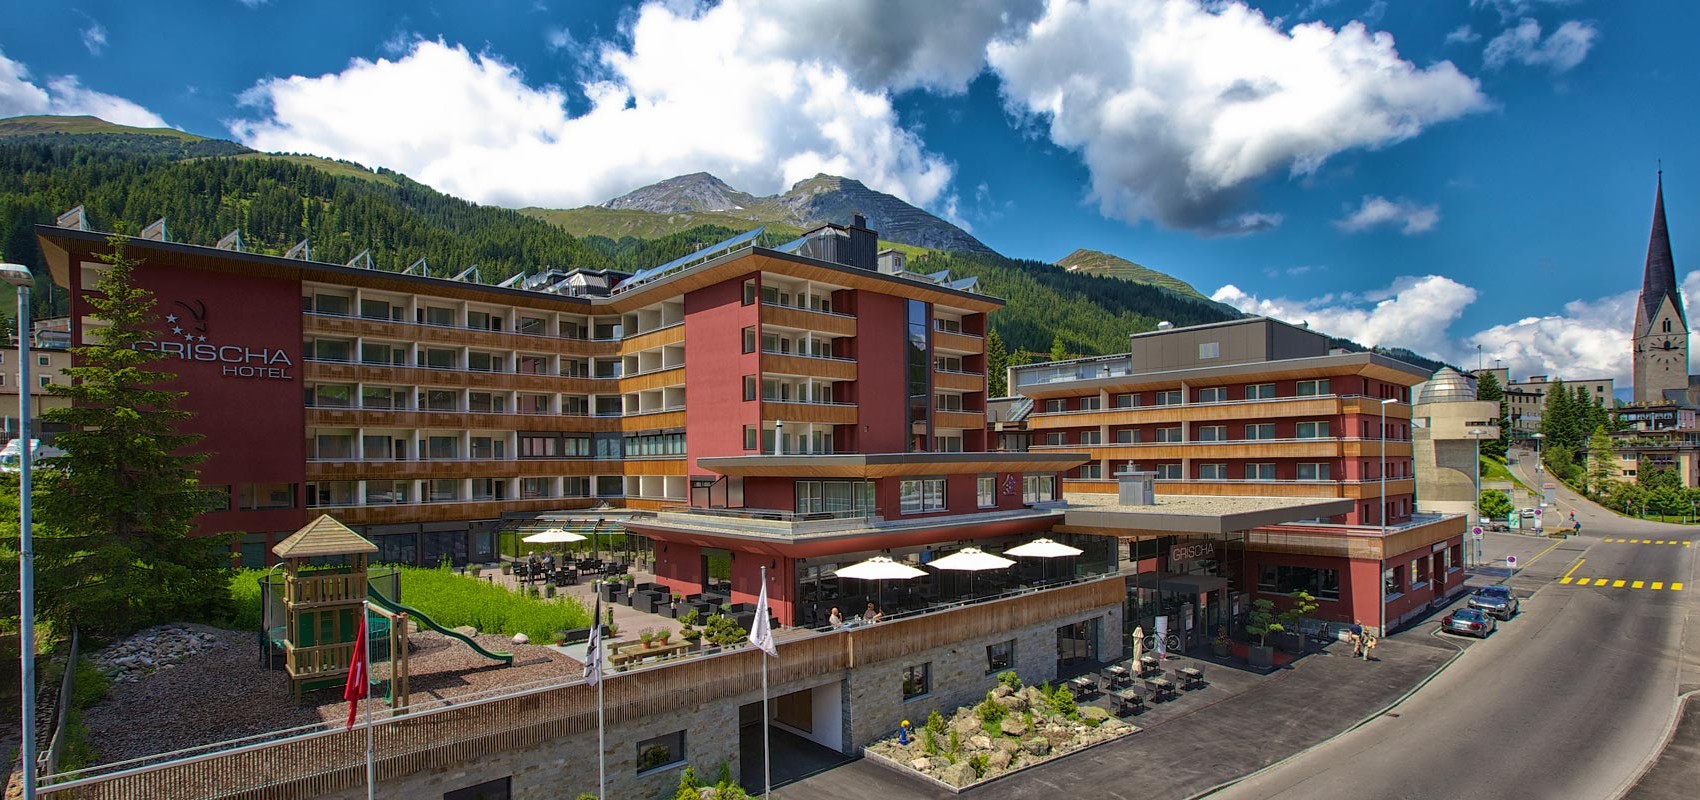 Hotel Grischa, vista exterior Panorama